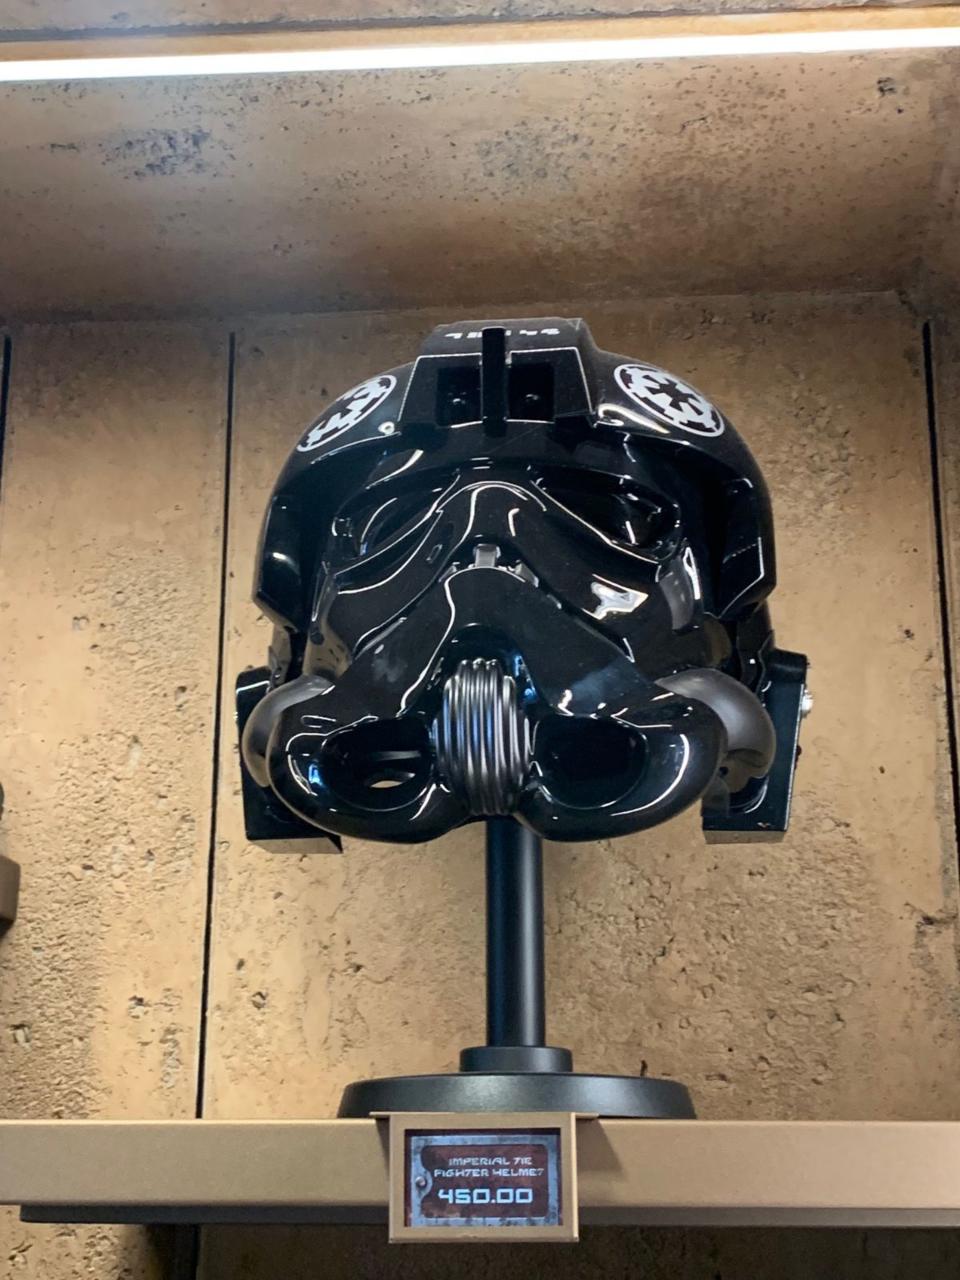 7. Imperial TIE fighter helmet